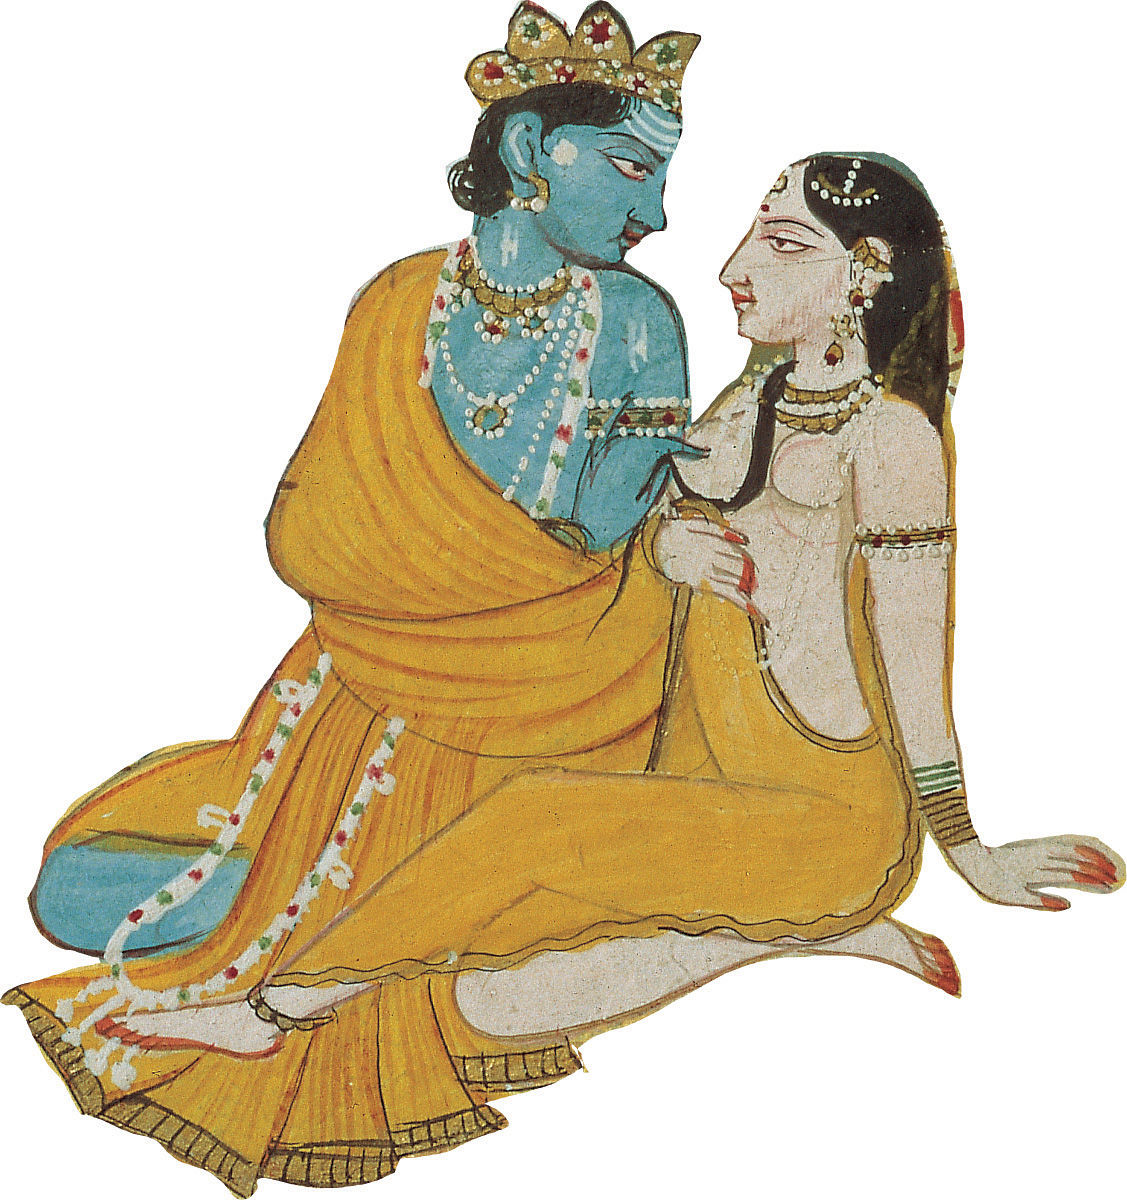 LA RELACIÓN SEXUAL COMO FORMA DE ORACIÓN Según los textos antiguos hindúes - photo 1